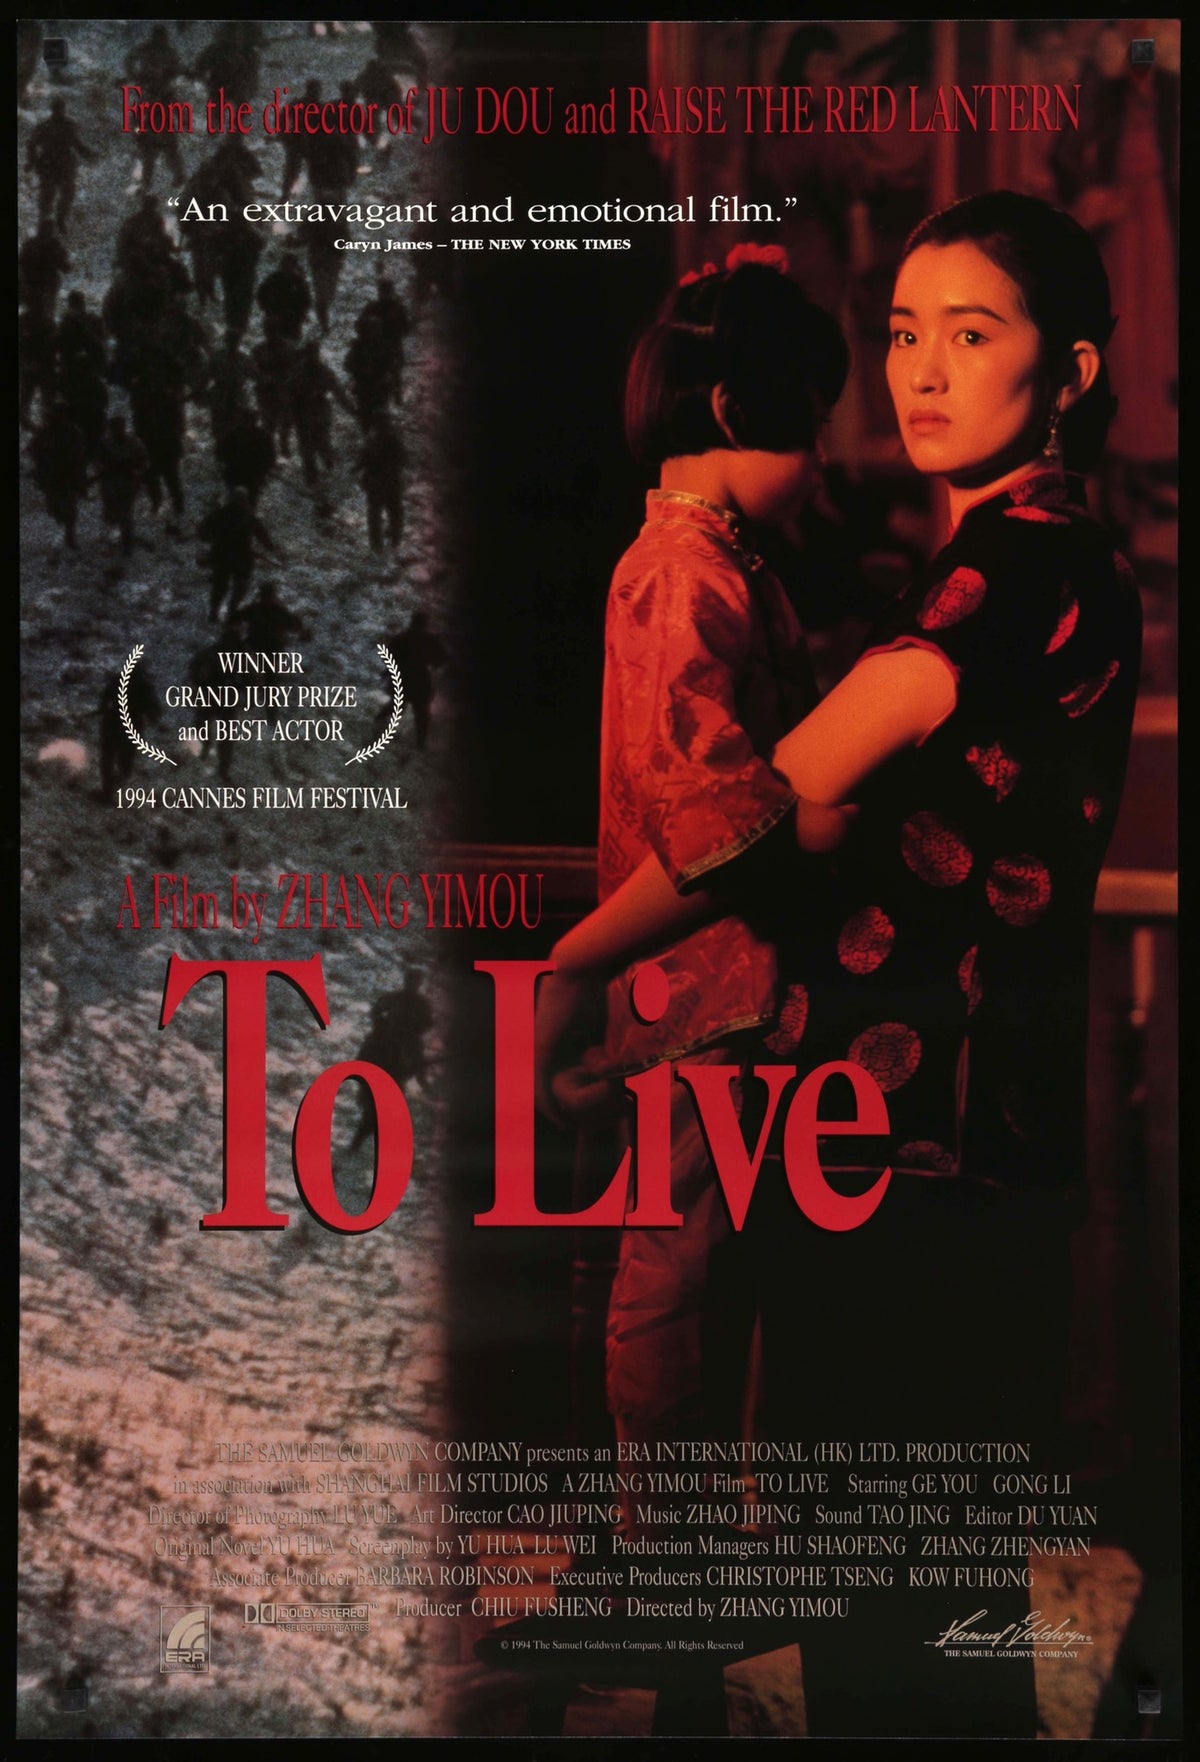 To Live (1994) original movie poster for sale at Original Film Art